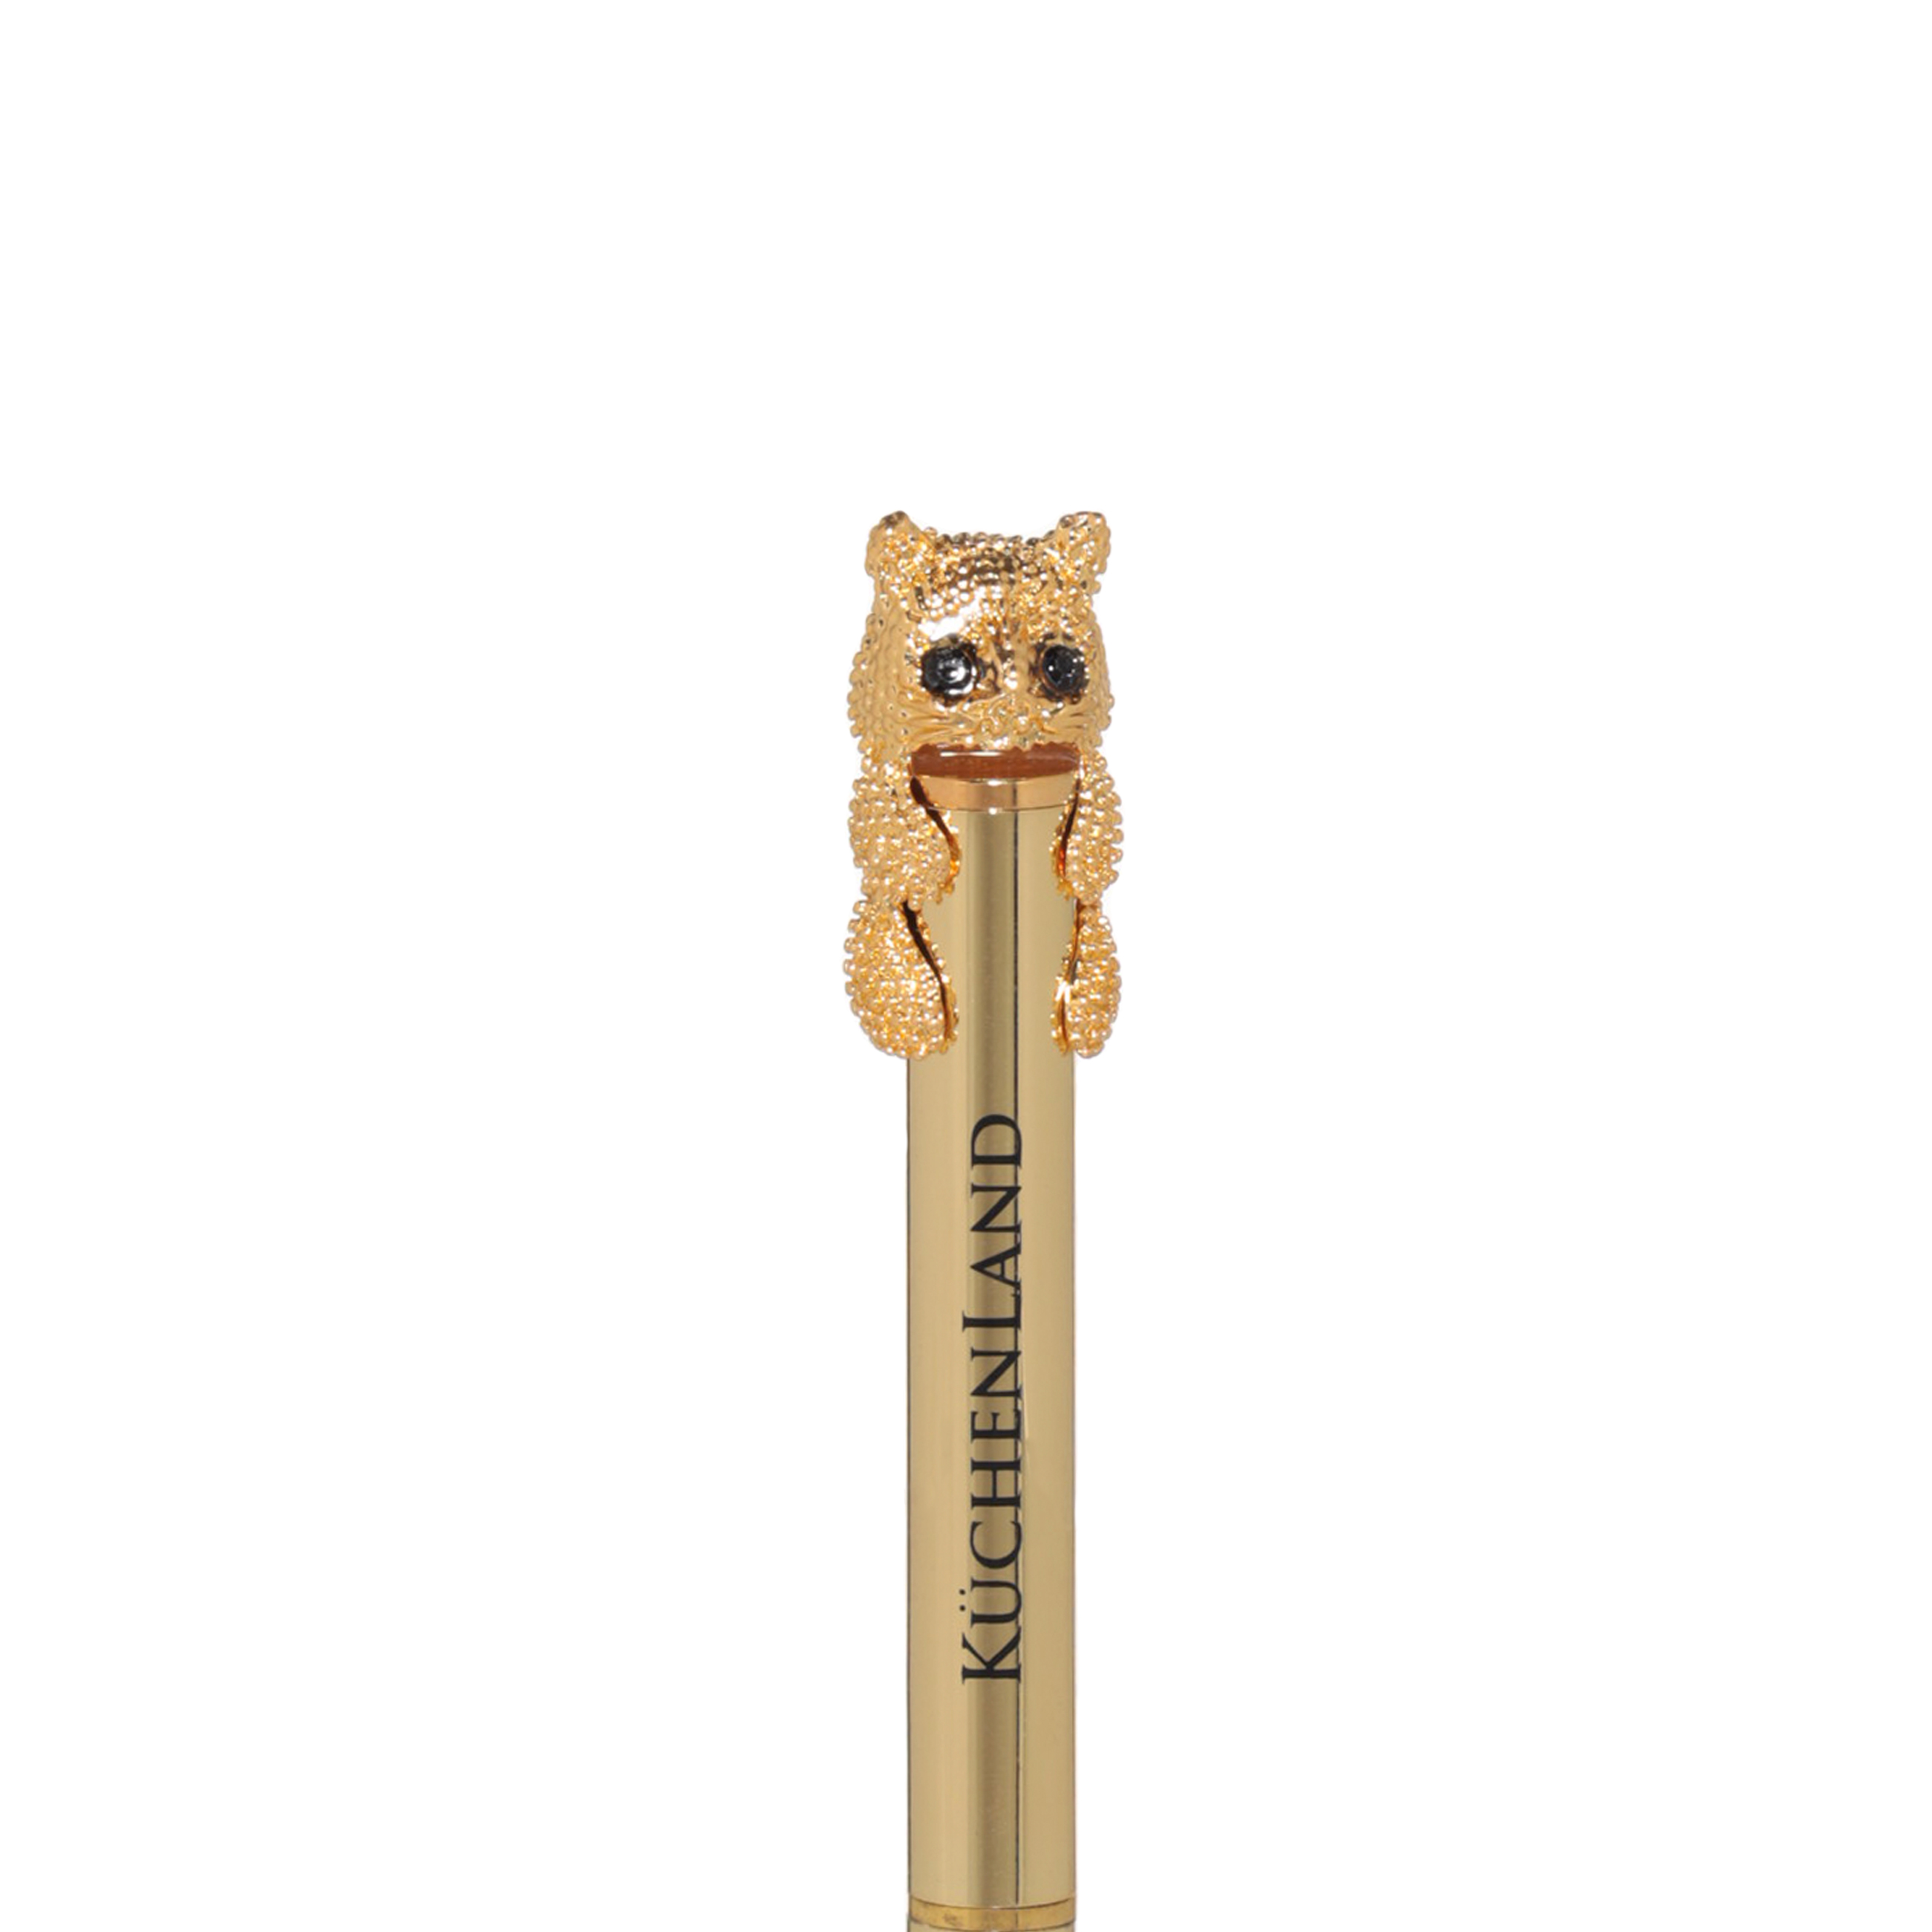 Ручка шариковая, 14 см, с фигуркой, золотистая, Кот, Draw figure изображение № 2